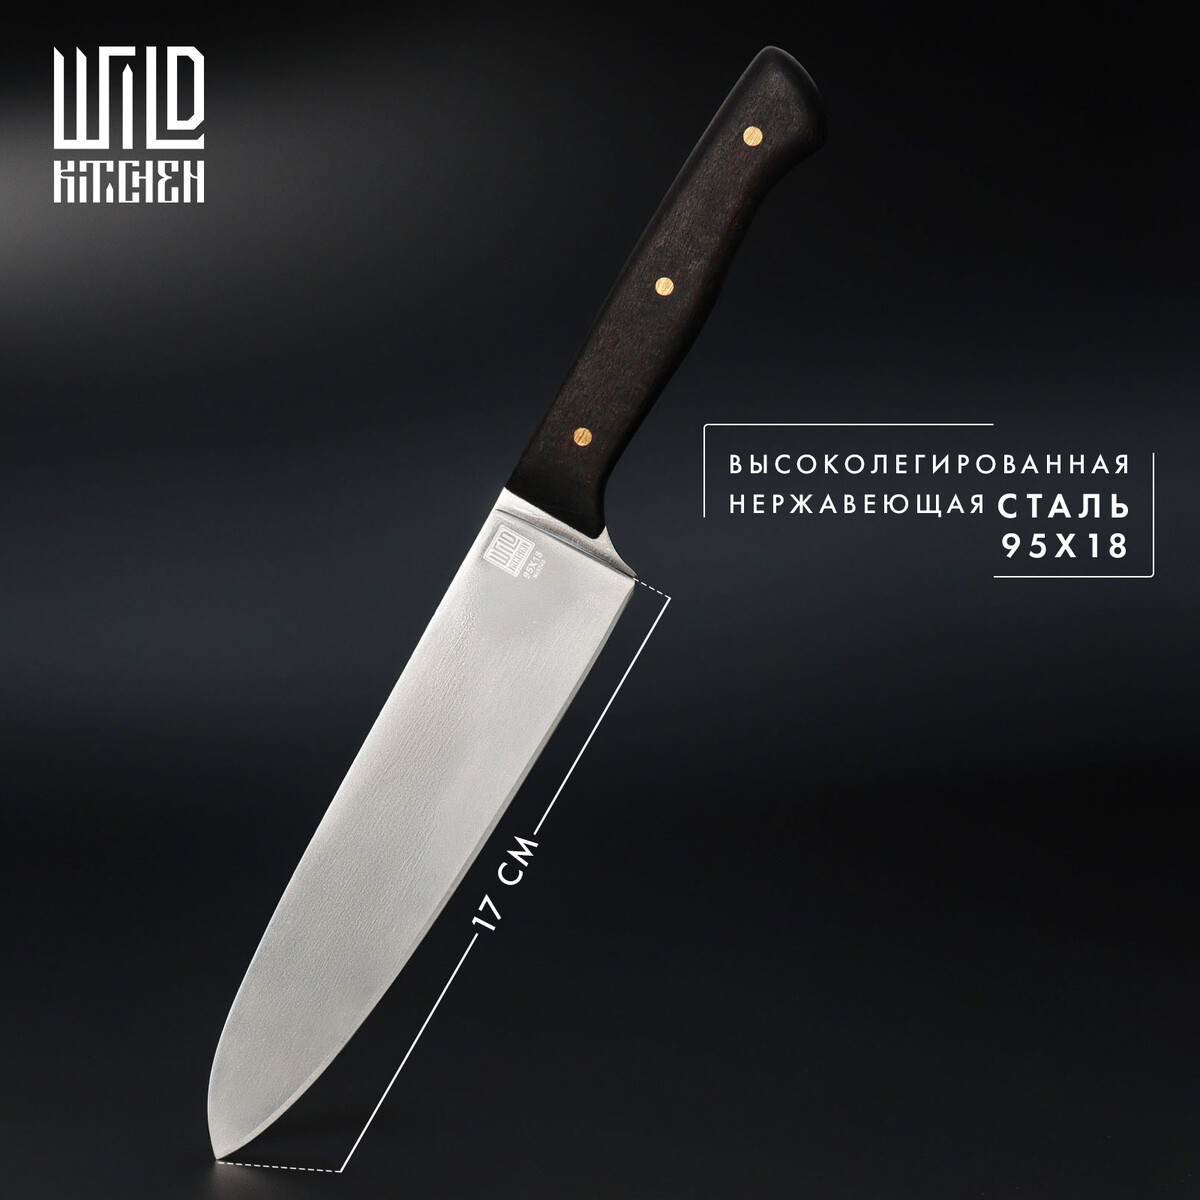 Нож кухонный - шеф wild kitchen, сталь 95×18, лезвие 17 см нож пчак кухонный wild kitchen сталь 95×18 лезвие 16 5 см